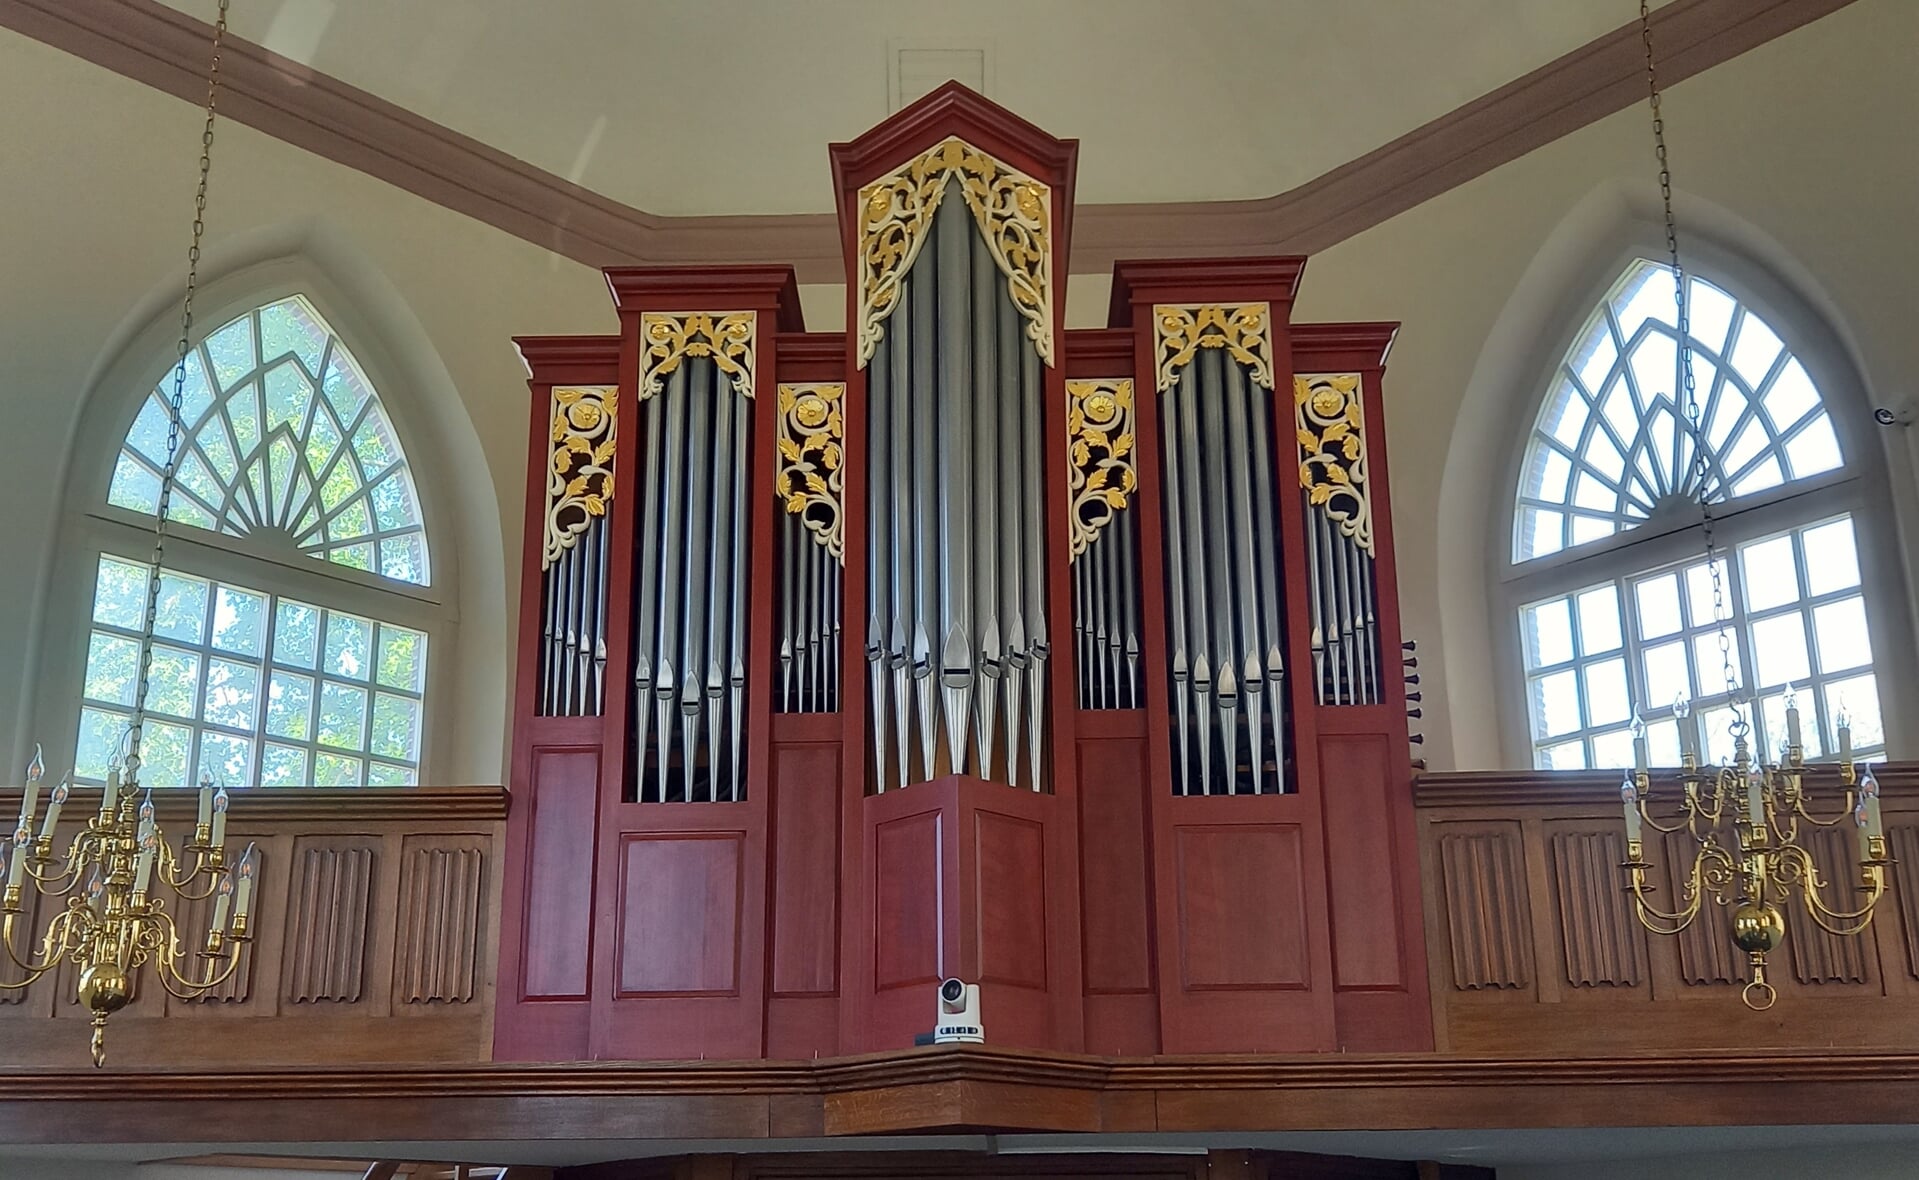 Het orgel in de Boxtelse protestantse kerk is maandag 29 mei nog zichtbaar, daarna wordt het tijdelijk afgedekt.